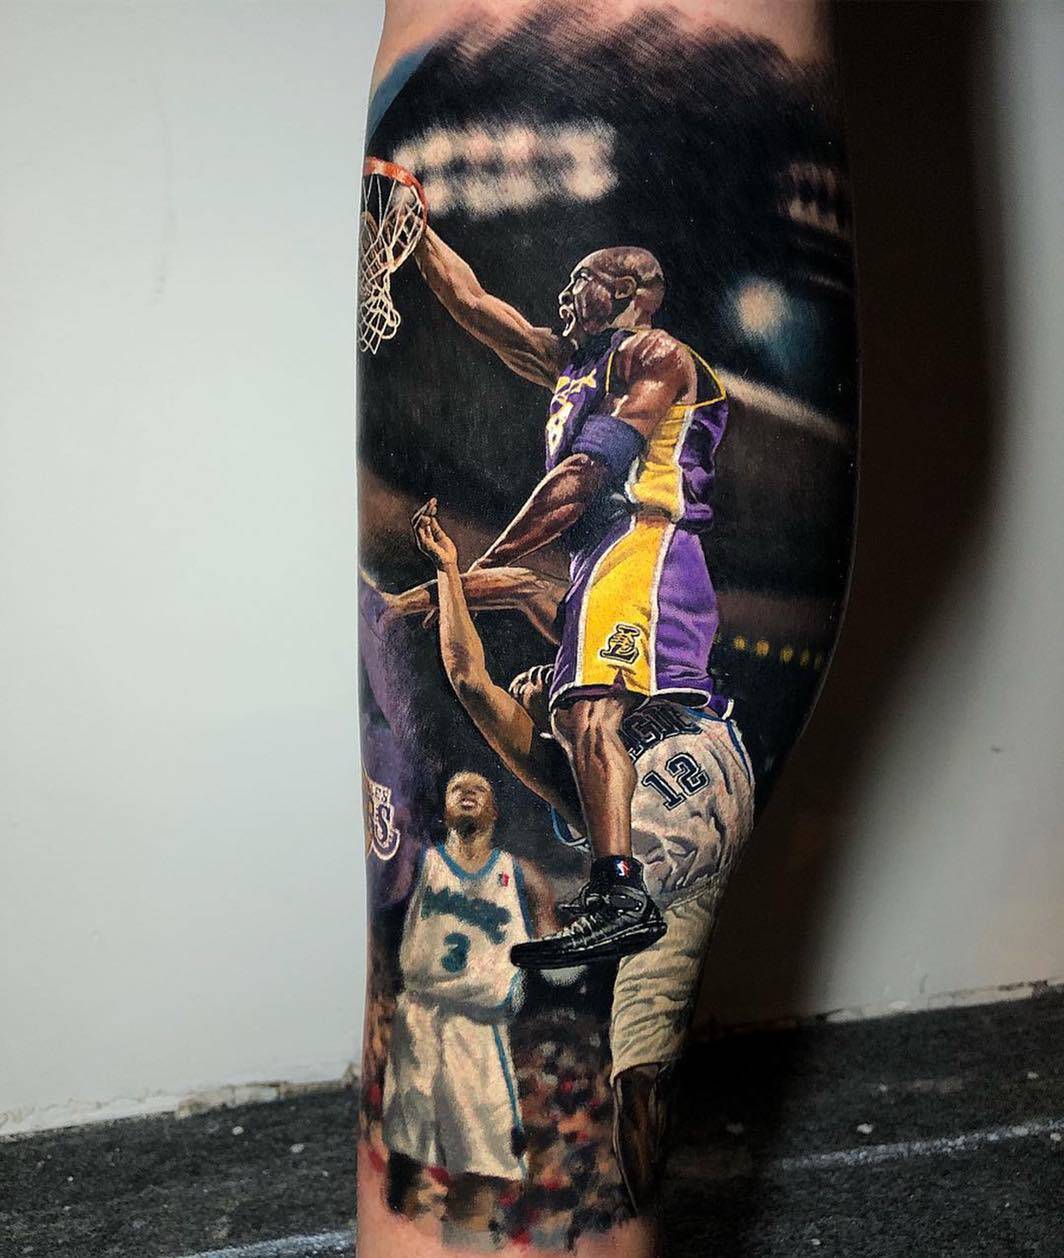 The NBA legends tattoo